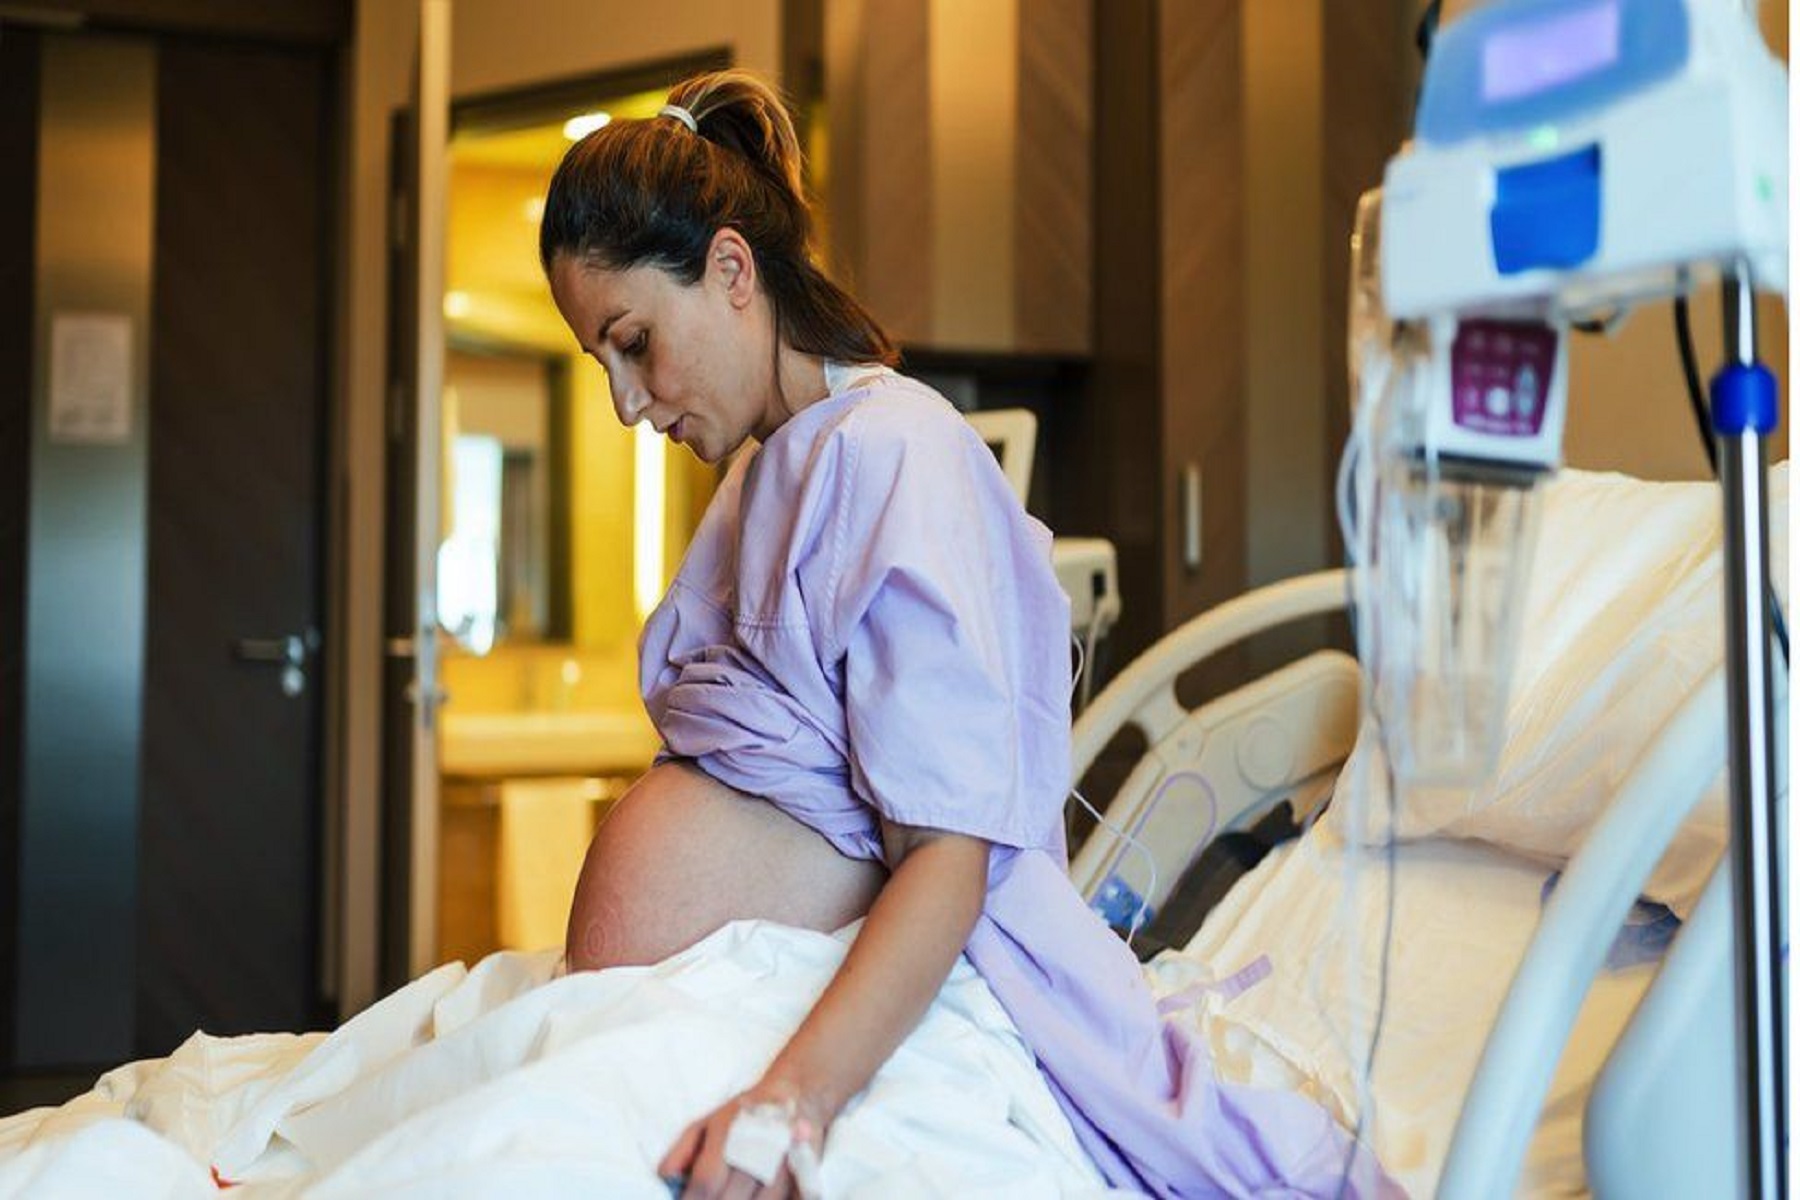 Εγκυμοσύνη CDC: Ο εμβολιασμός COVID-19 μεταξύ εγκύων παραμένει χαμηλός παρά τον σοβαρό κίνδυνο